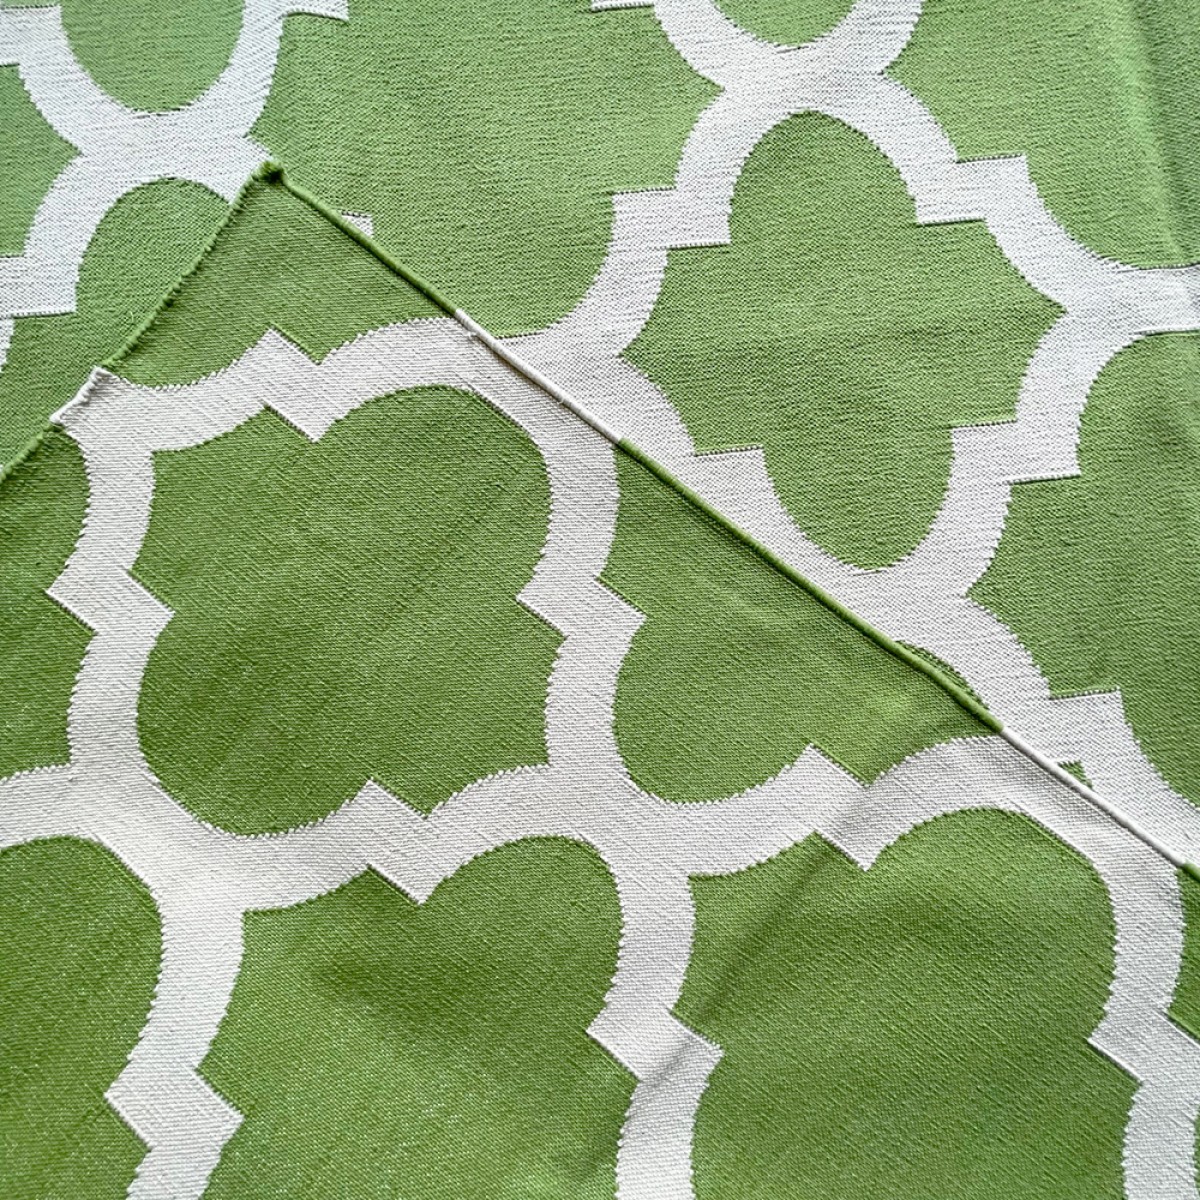 Cotton Floor Rugs - Green